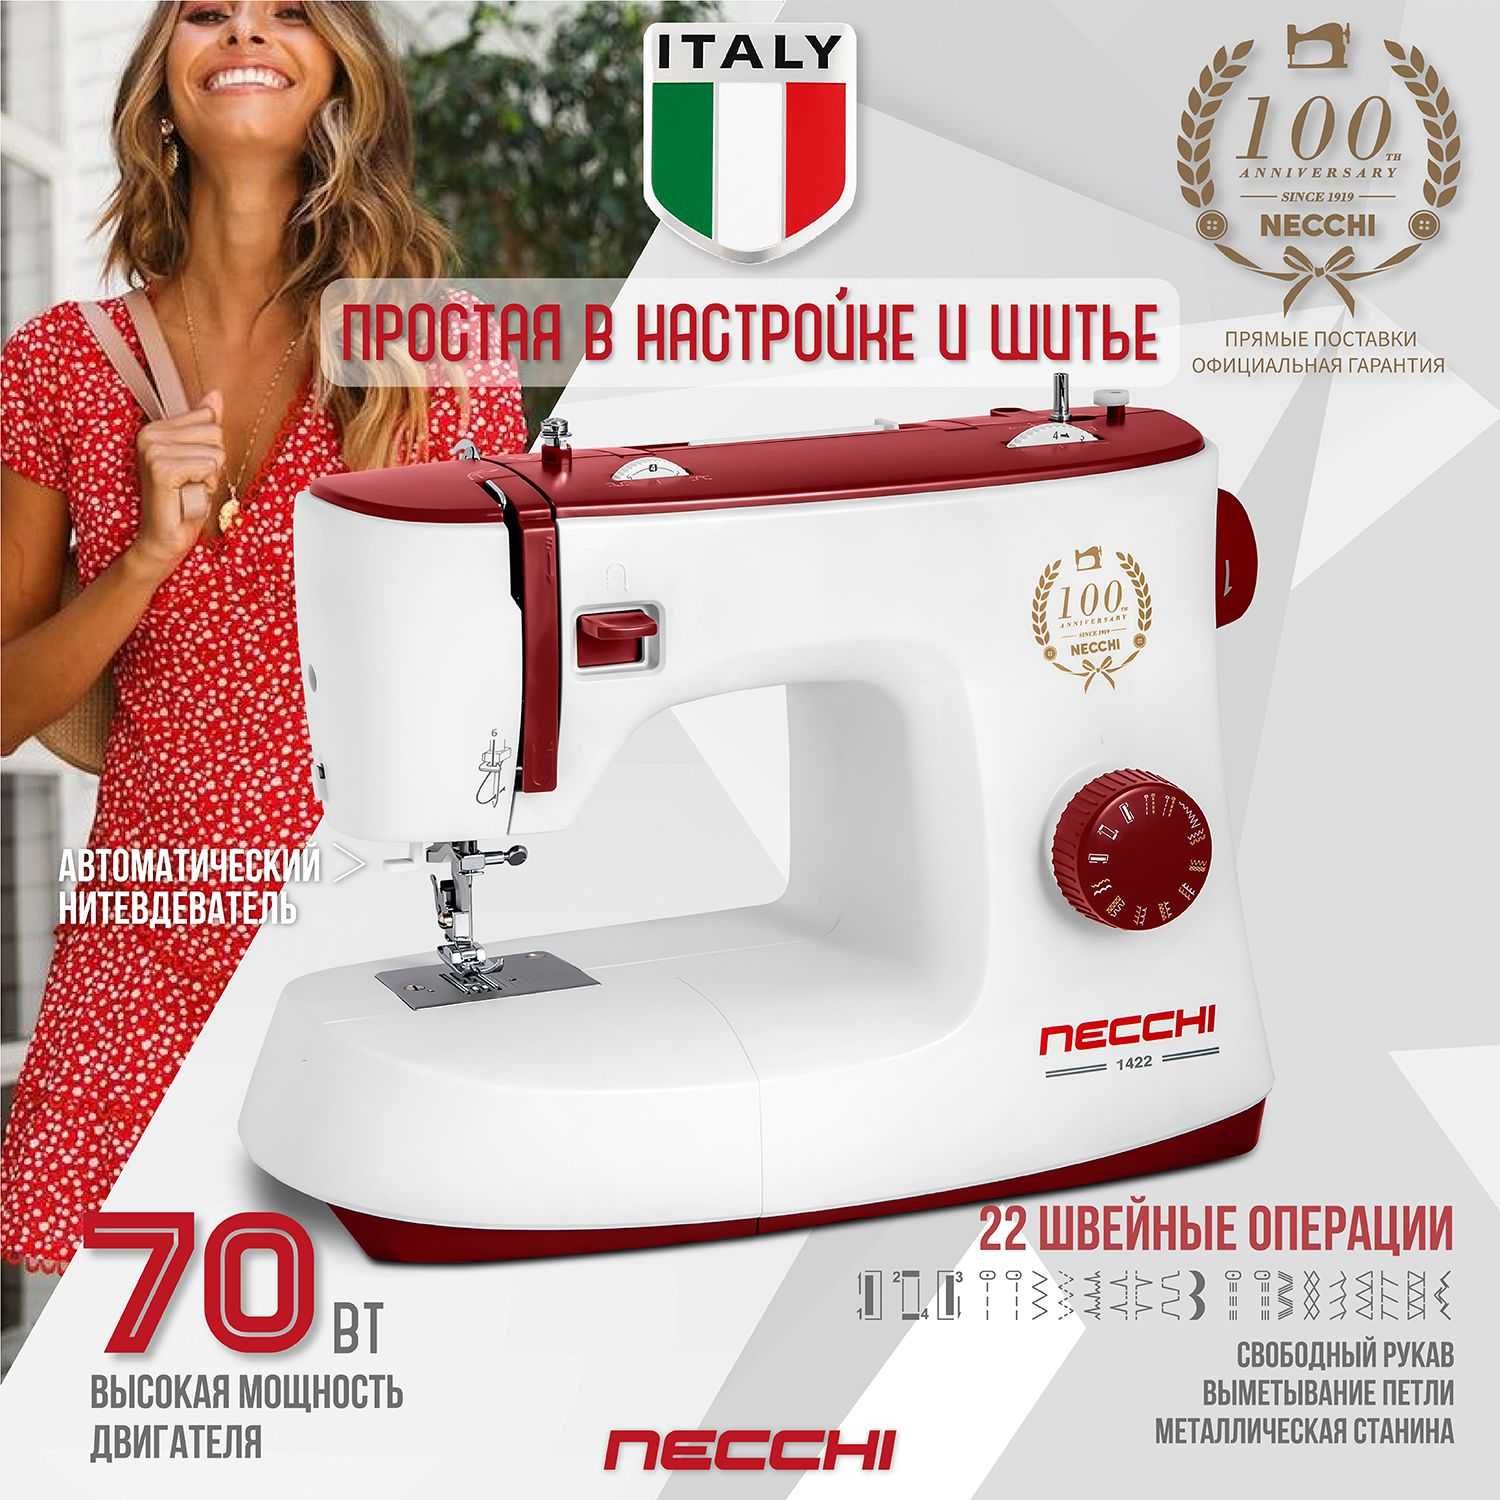 Итальянская швейная машина NEcchi K417 Tikuv Mashinasi